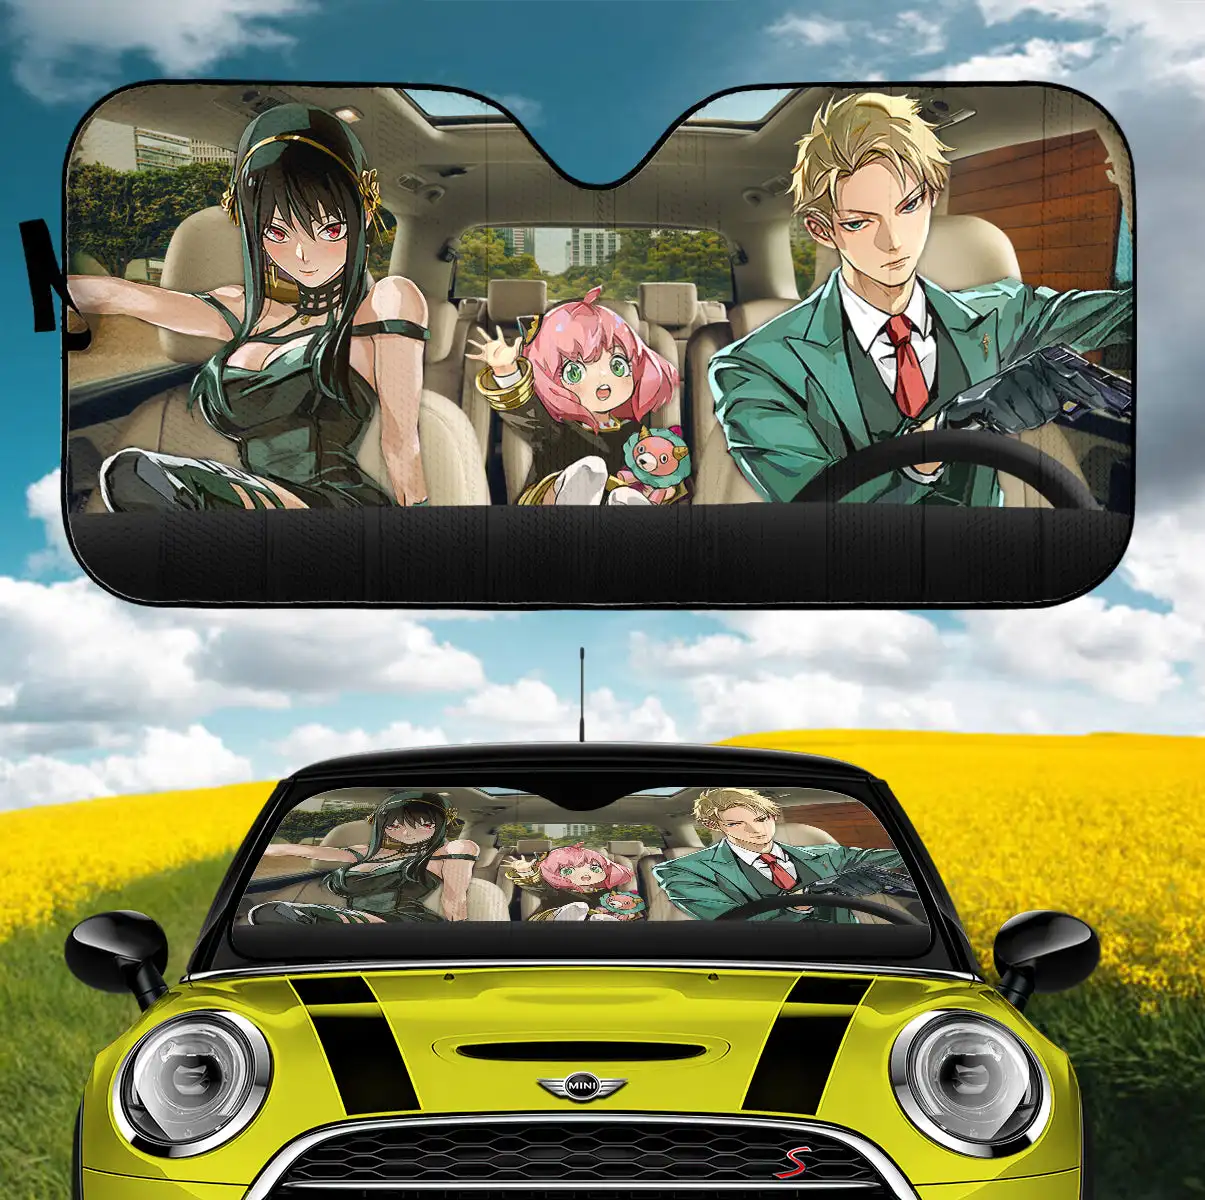 

Spy X Family Loid Yor And Anya Hot Anime Car Auto Sunshades